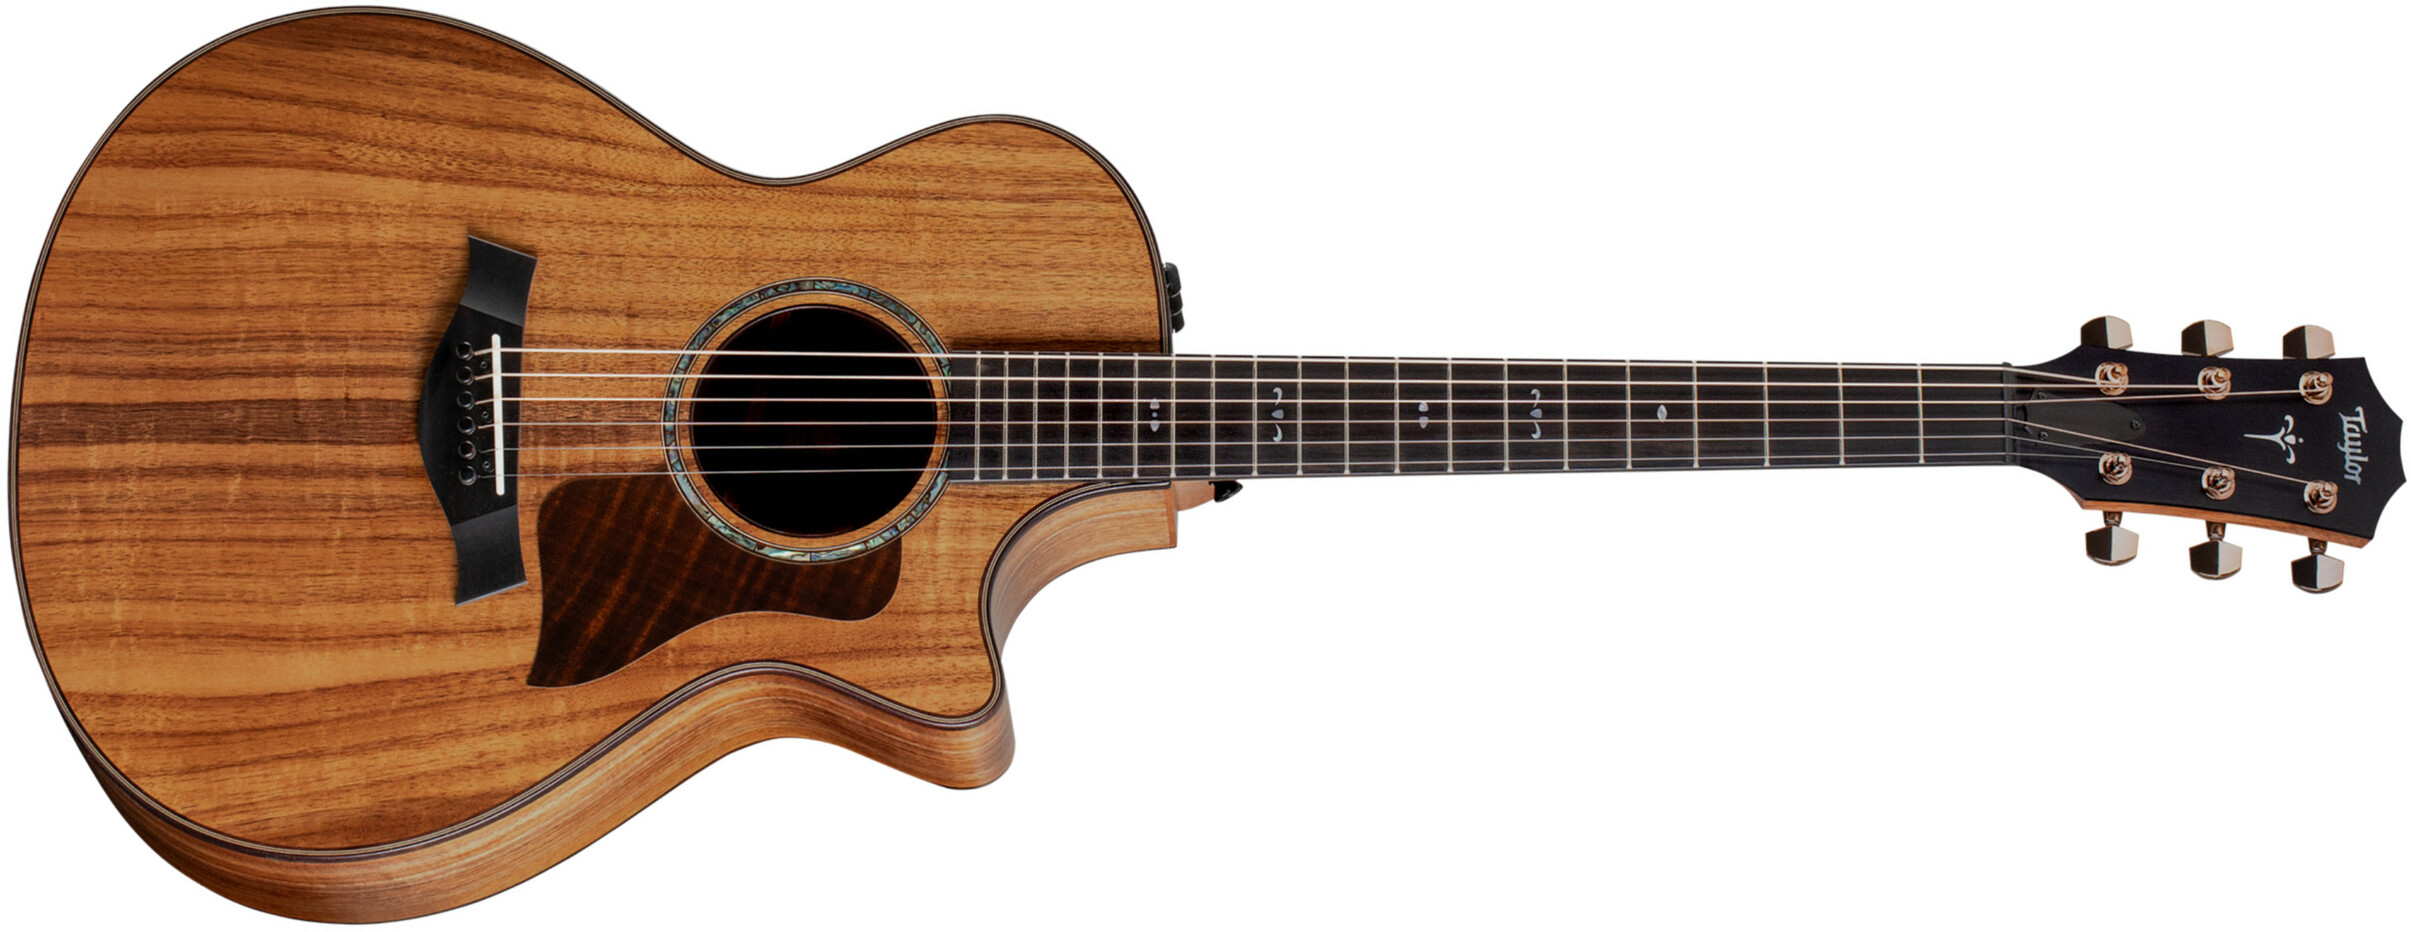 Taylor 722ce Koa East Indian Rw - Natural - Elektroakustische Gitarre - Main picture